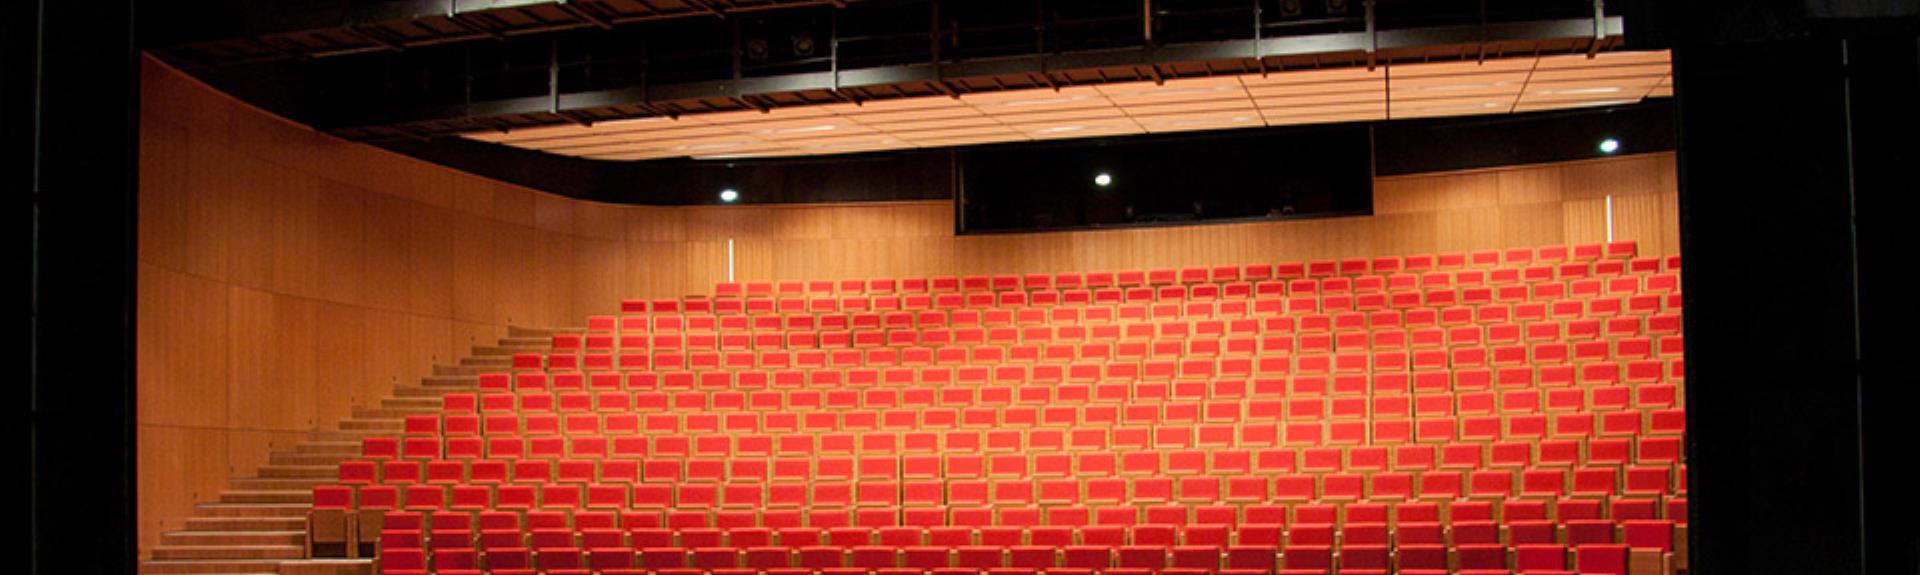 Théâtre-De-Thalie2,-Montaigu,-960x520